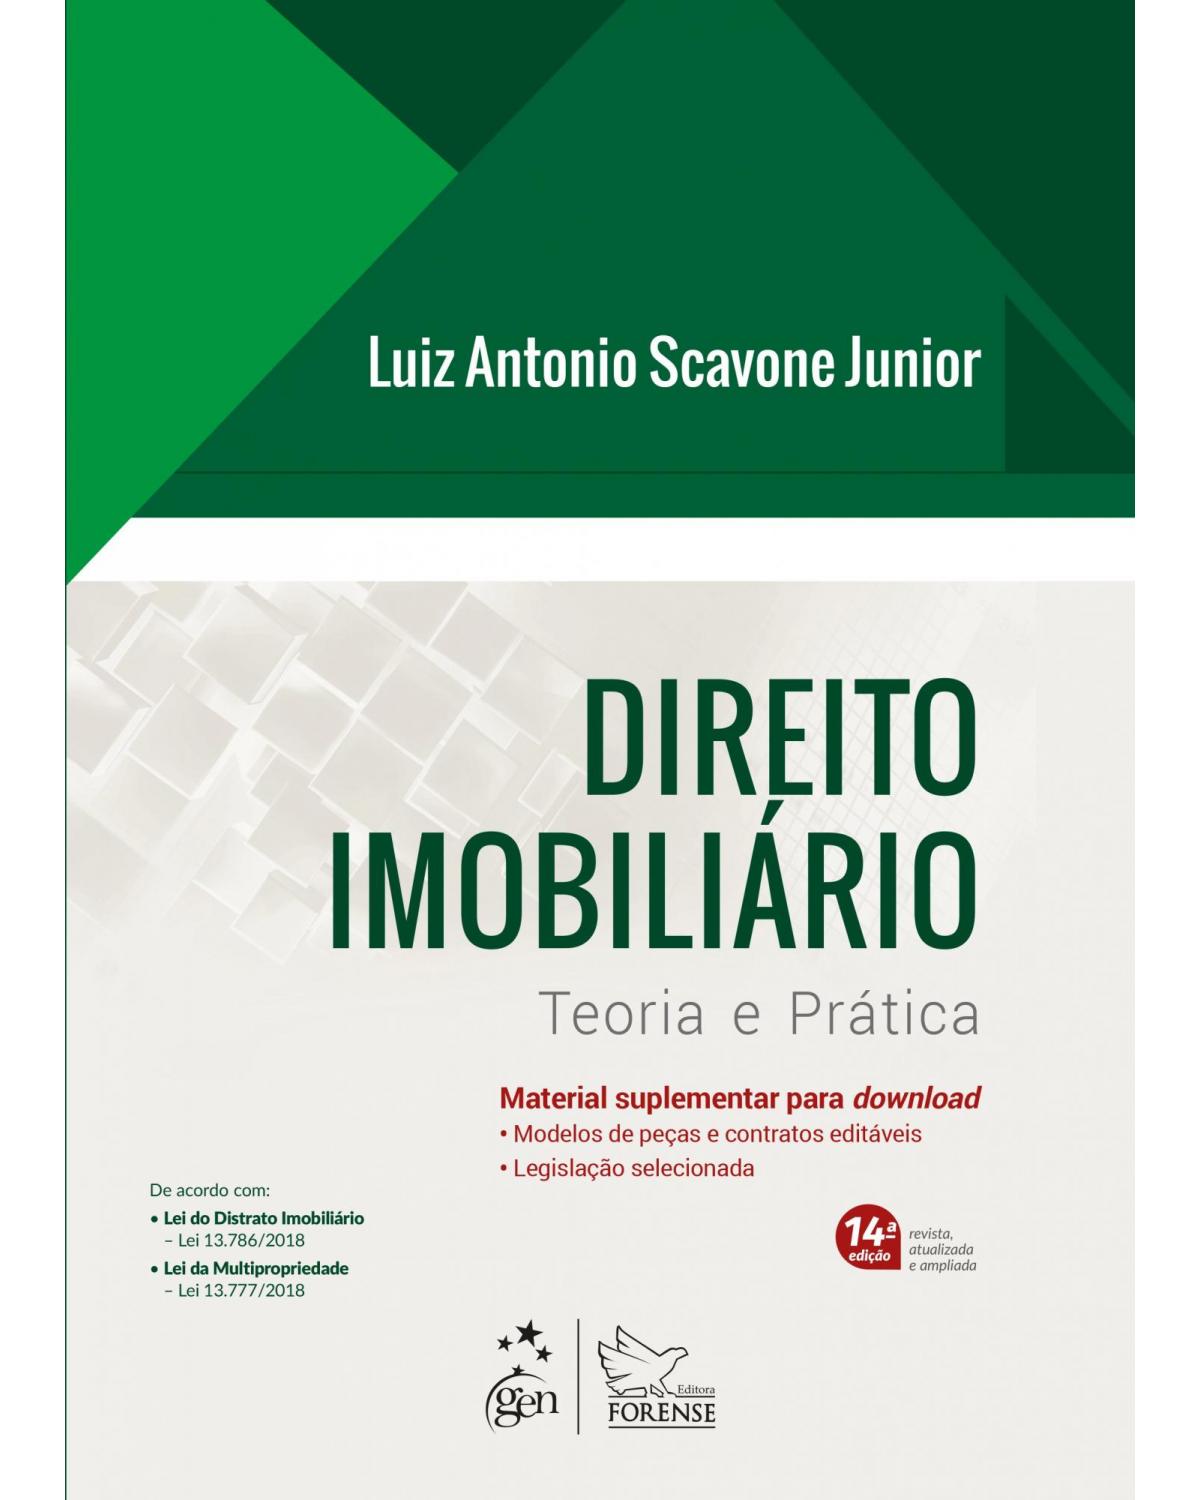 Direito imobiliário - teoria e prática - 14ª Edição | 2019